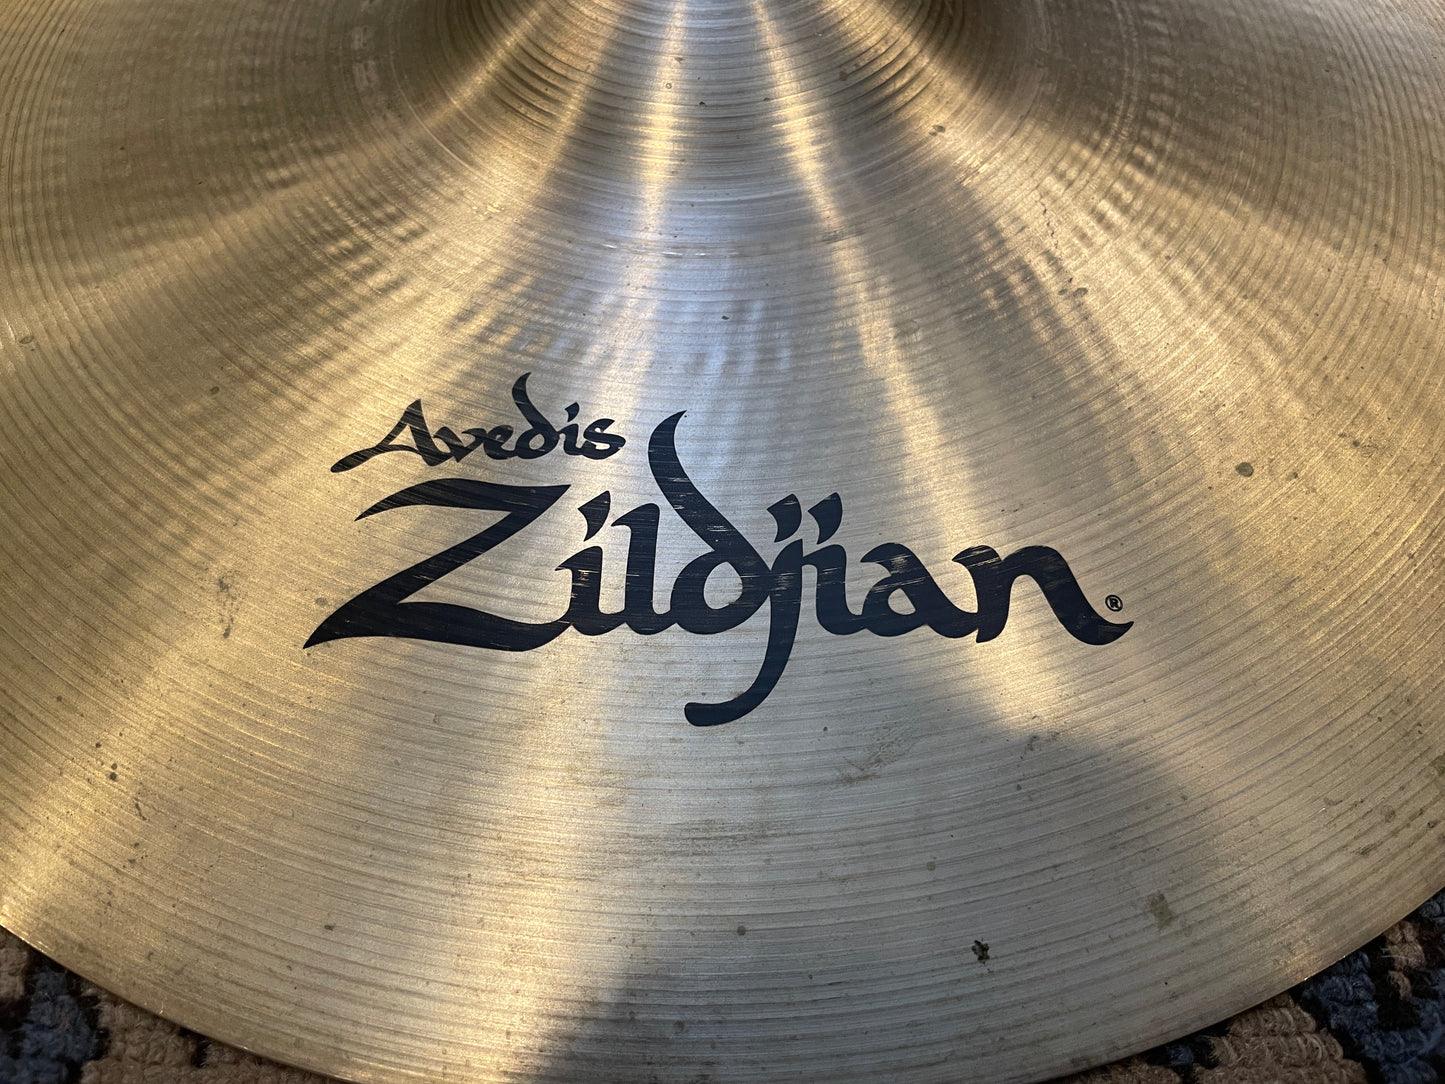 18" Zildjian A Thin Crash Cymbal 1424g